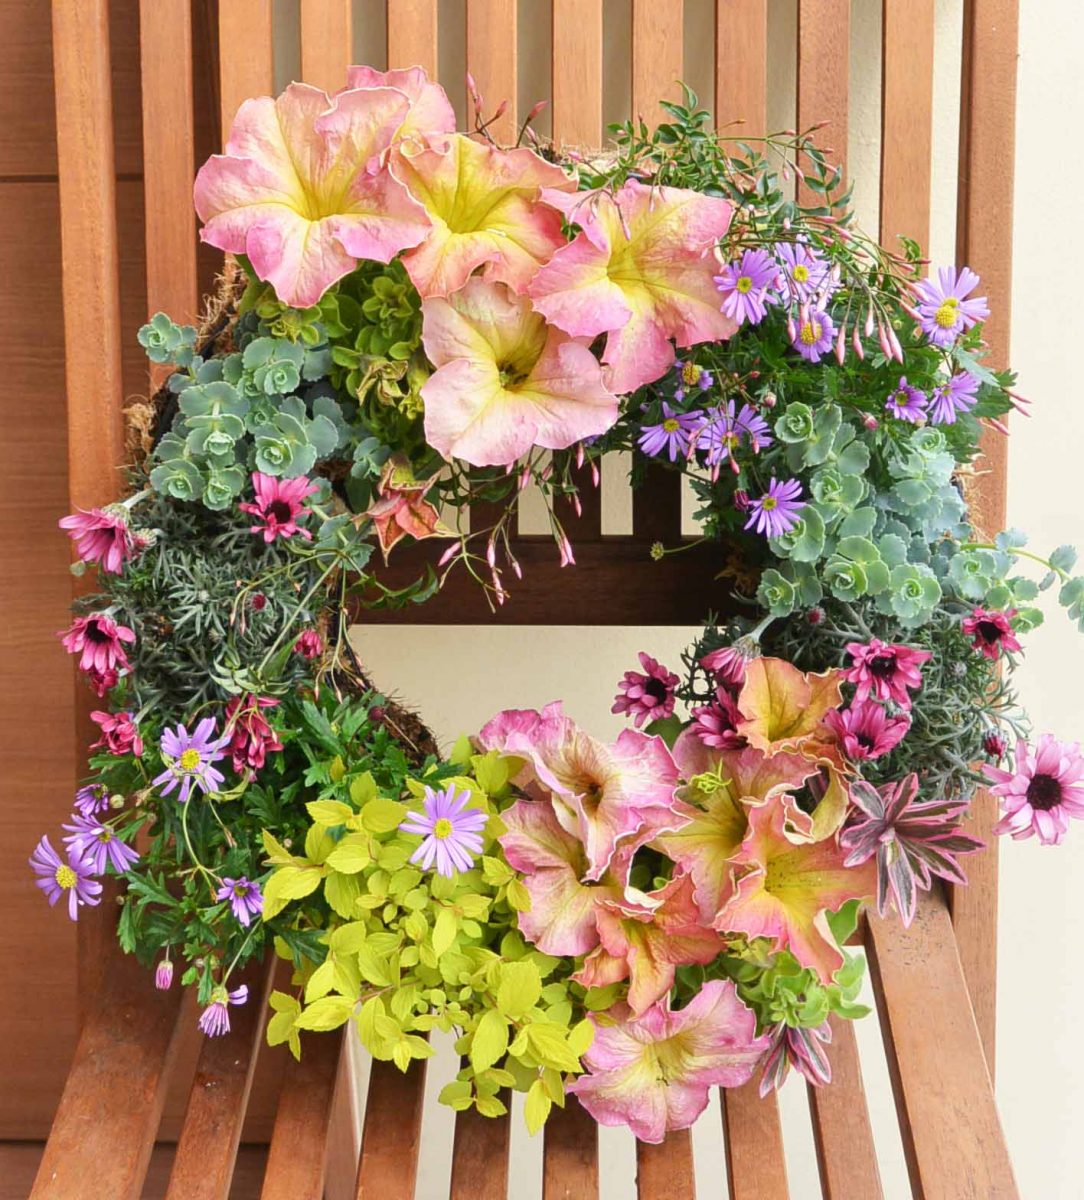 リース型ハンギングバスケットを使って花のリース作り 花のまち ころぼっくる 長野県長野市の花屋 園芸用品 ガーデニング用品